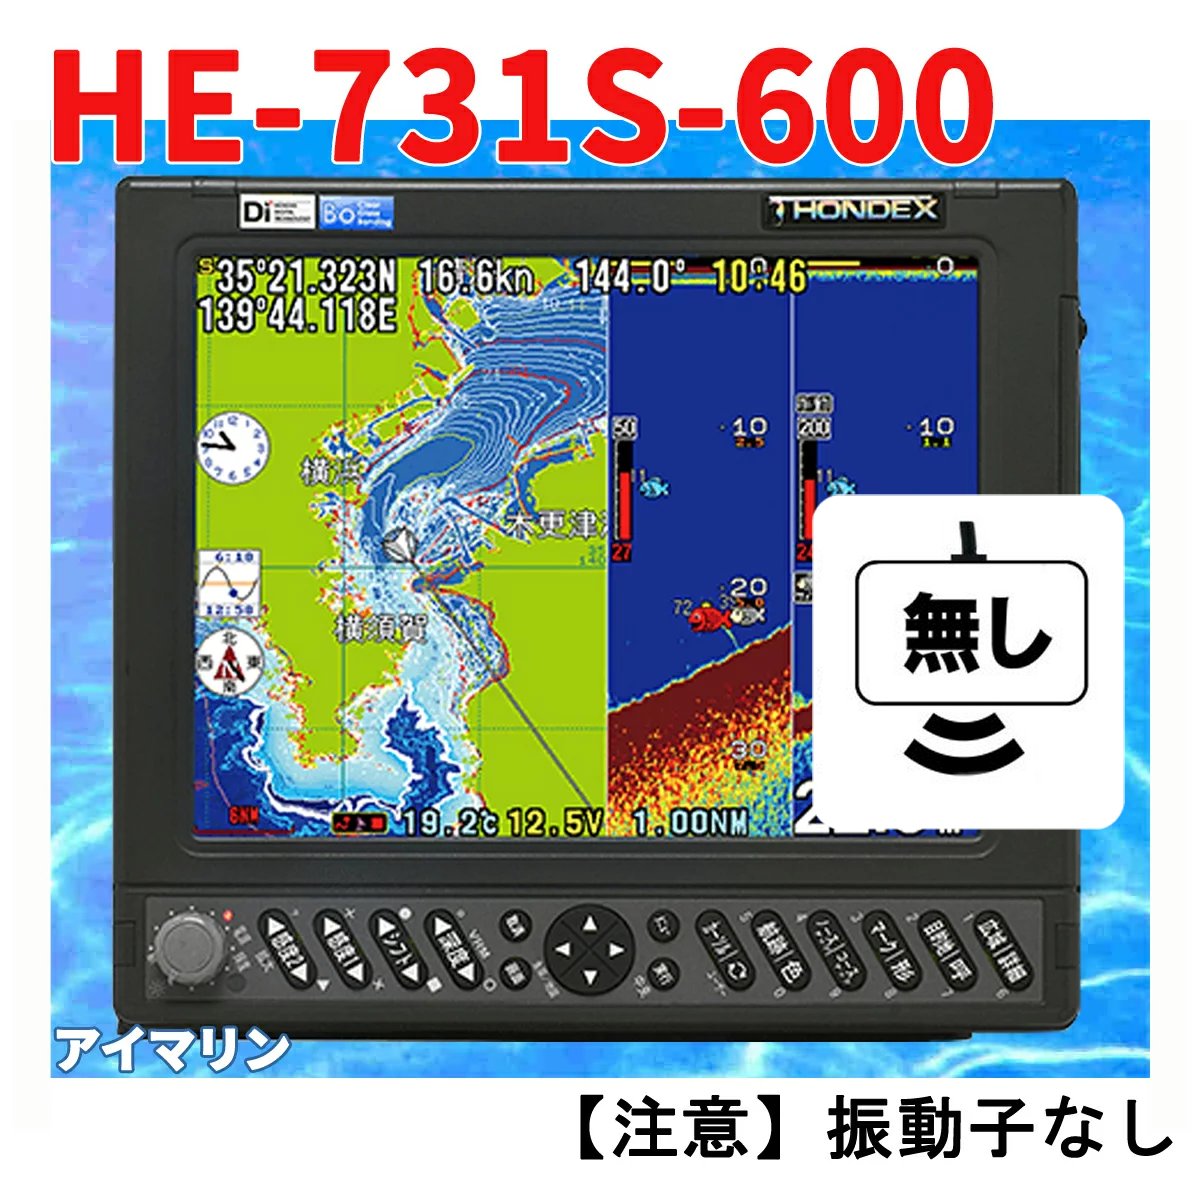 5/16 在庫あり HE-731S 600w 振動子無し GPS 魚探 アンテナ内蔵 ホンデックス 魚群探知機 HONDEX